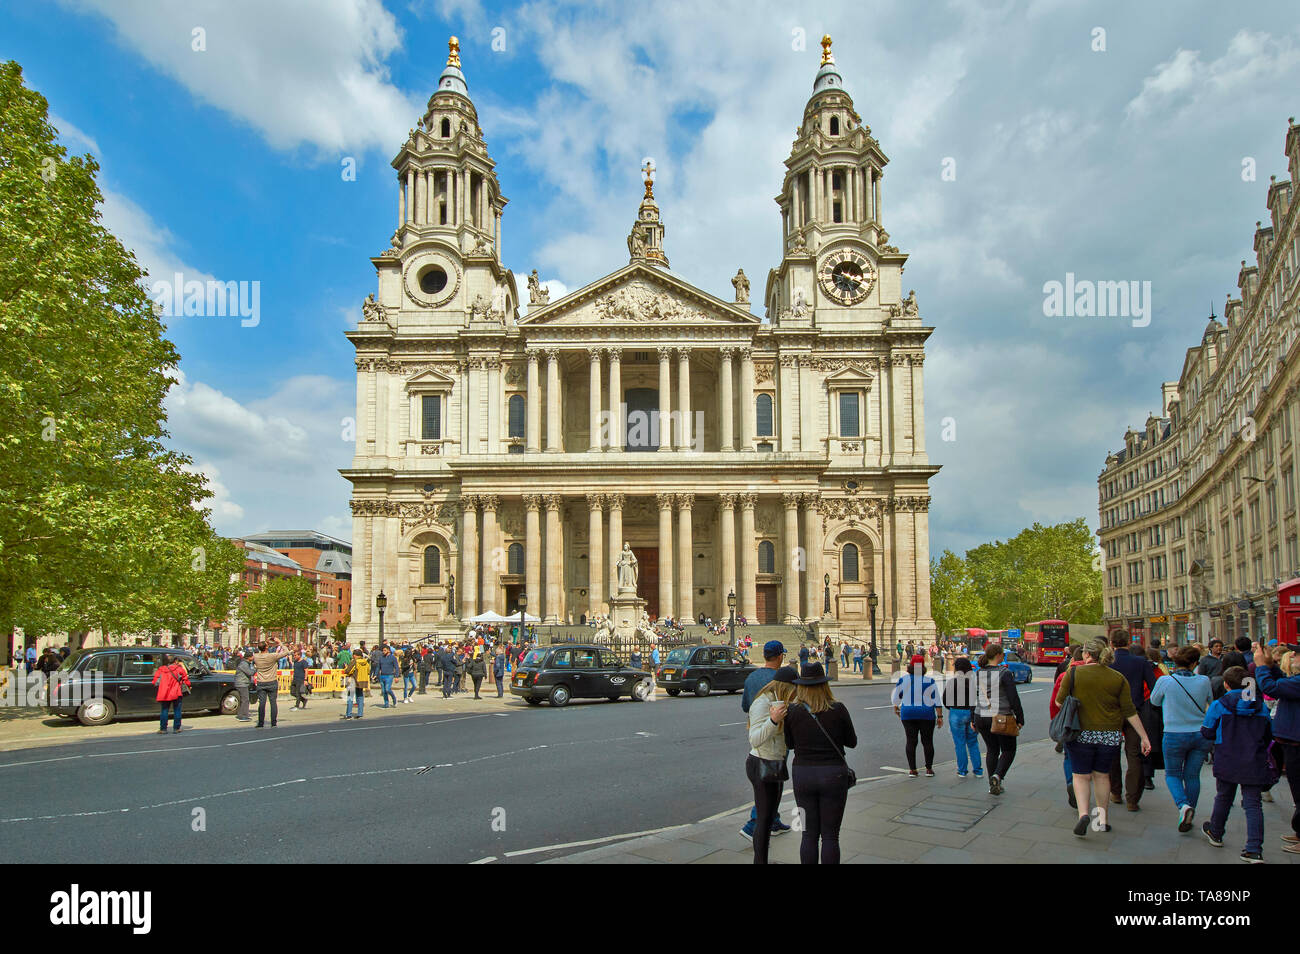 La Catedral de San Pablo de Londres con la gente en las aceras y taxis o taxis negros Foto de stock